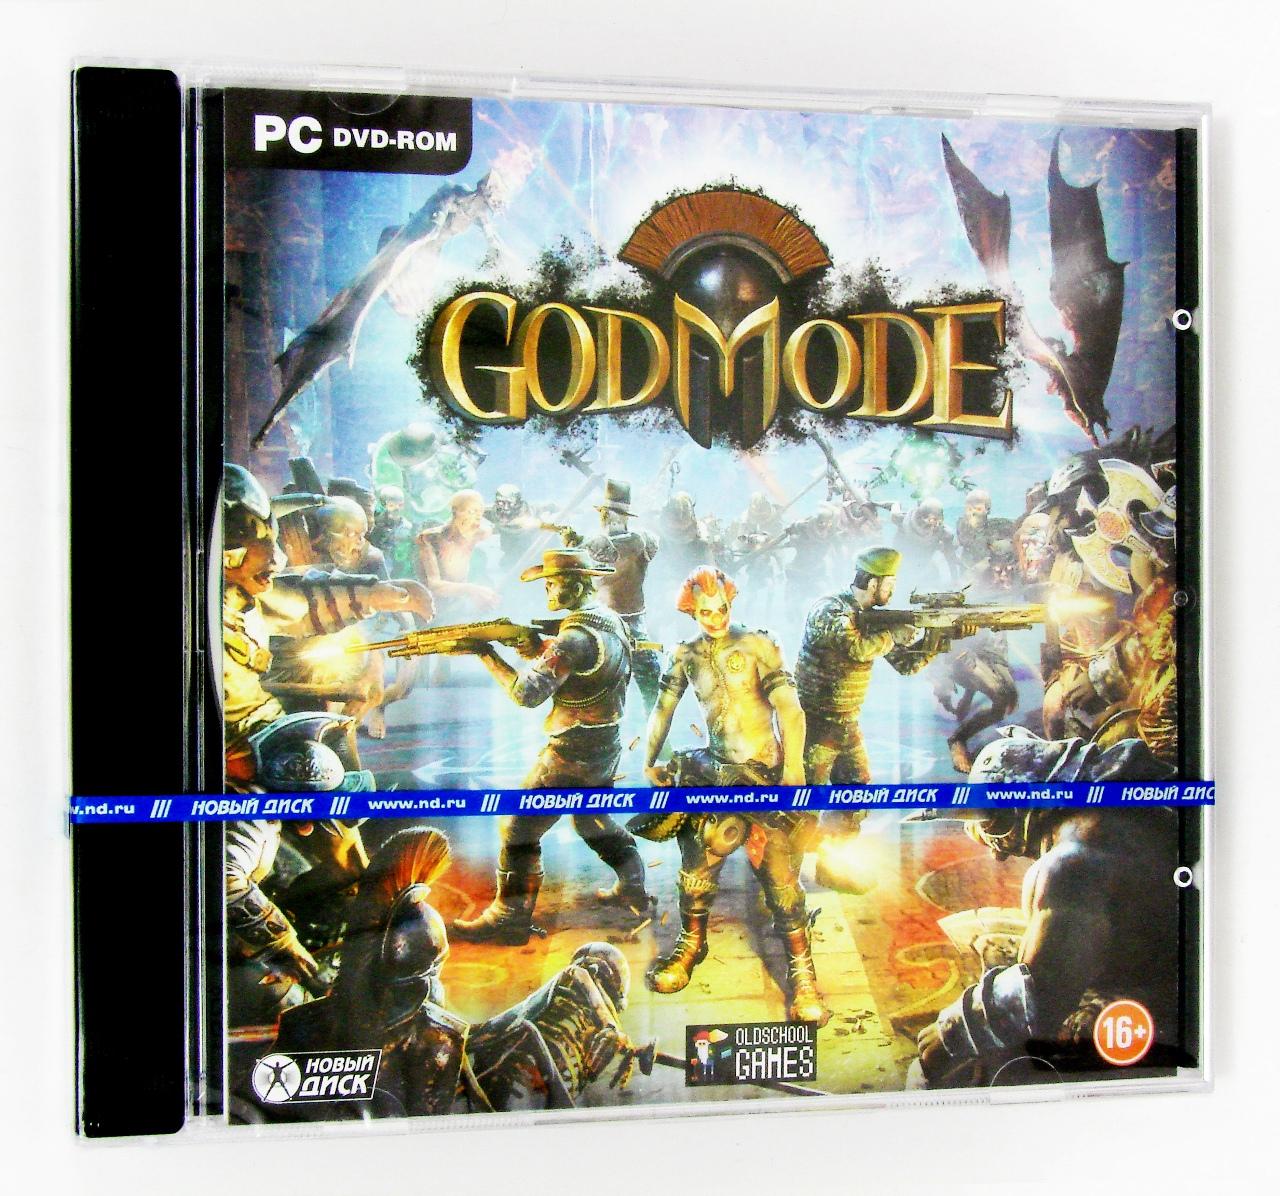 Компьютерный компакт-диск God Mode (PC), фирма "Новый диск", 1DVD